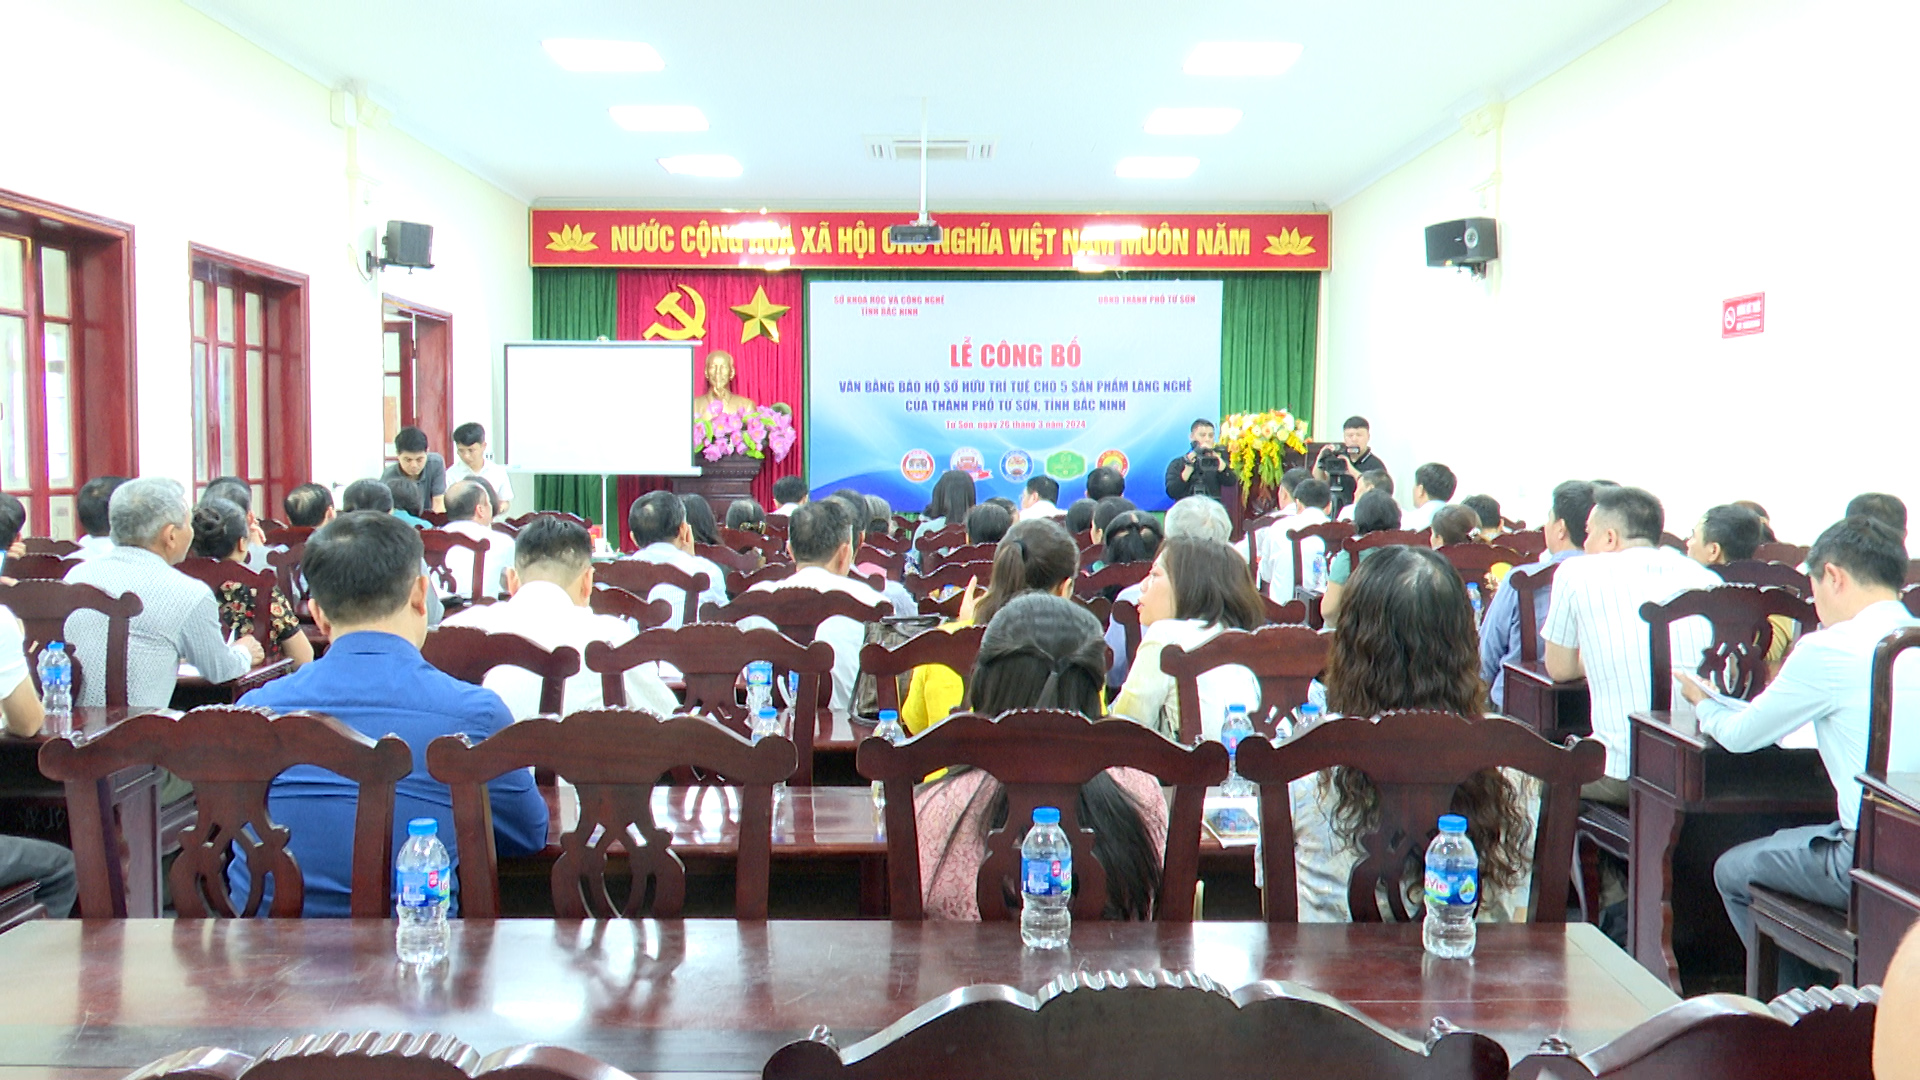 UBND thành phố Từ Sơn: tổ chức Lễ công bố văn bằng bảo hộ Sở hữu trí tuệ cho 5 sản phẩm làng nghề